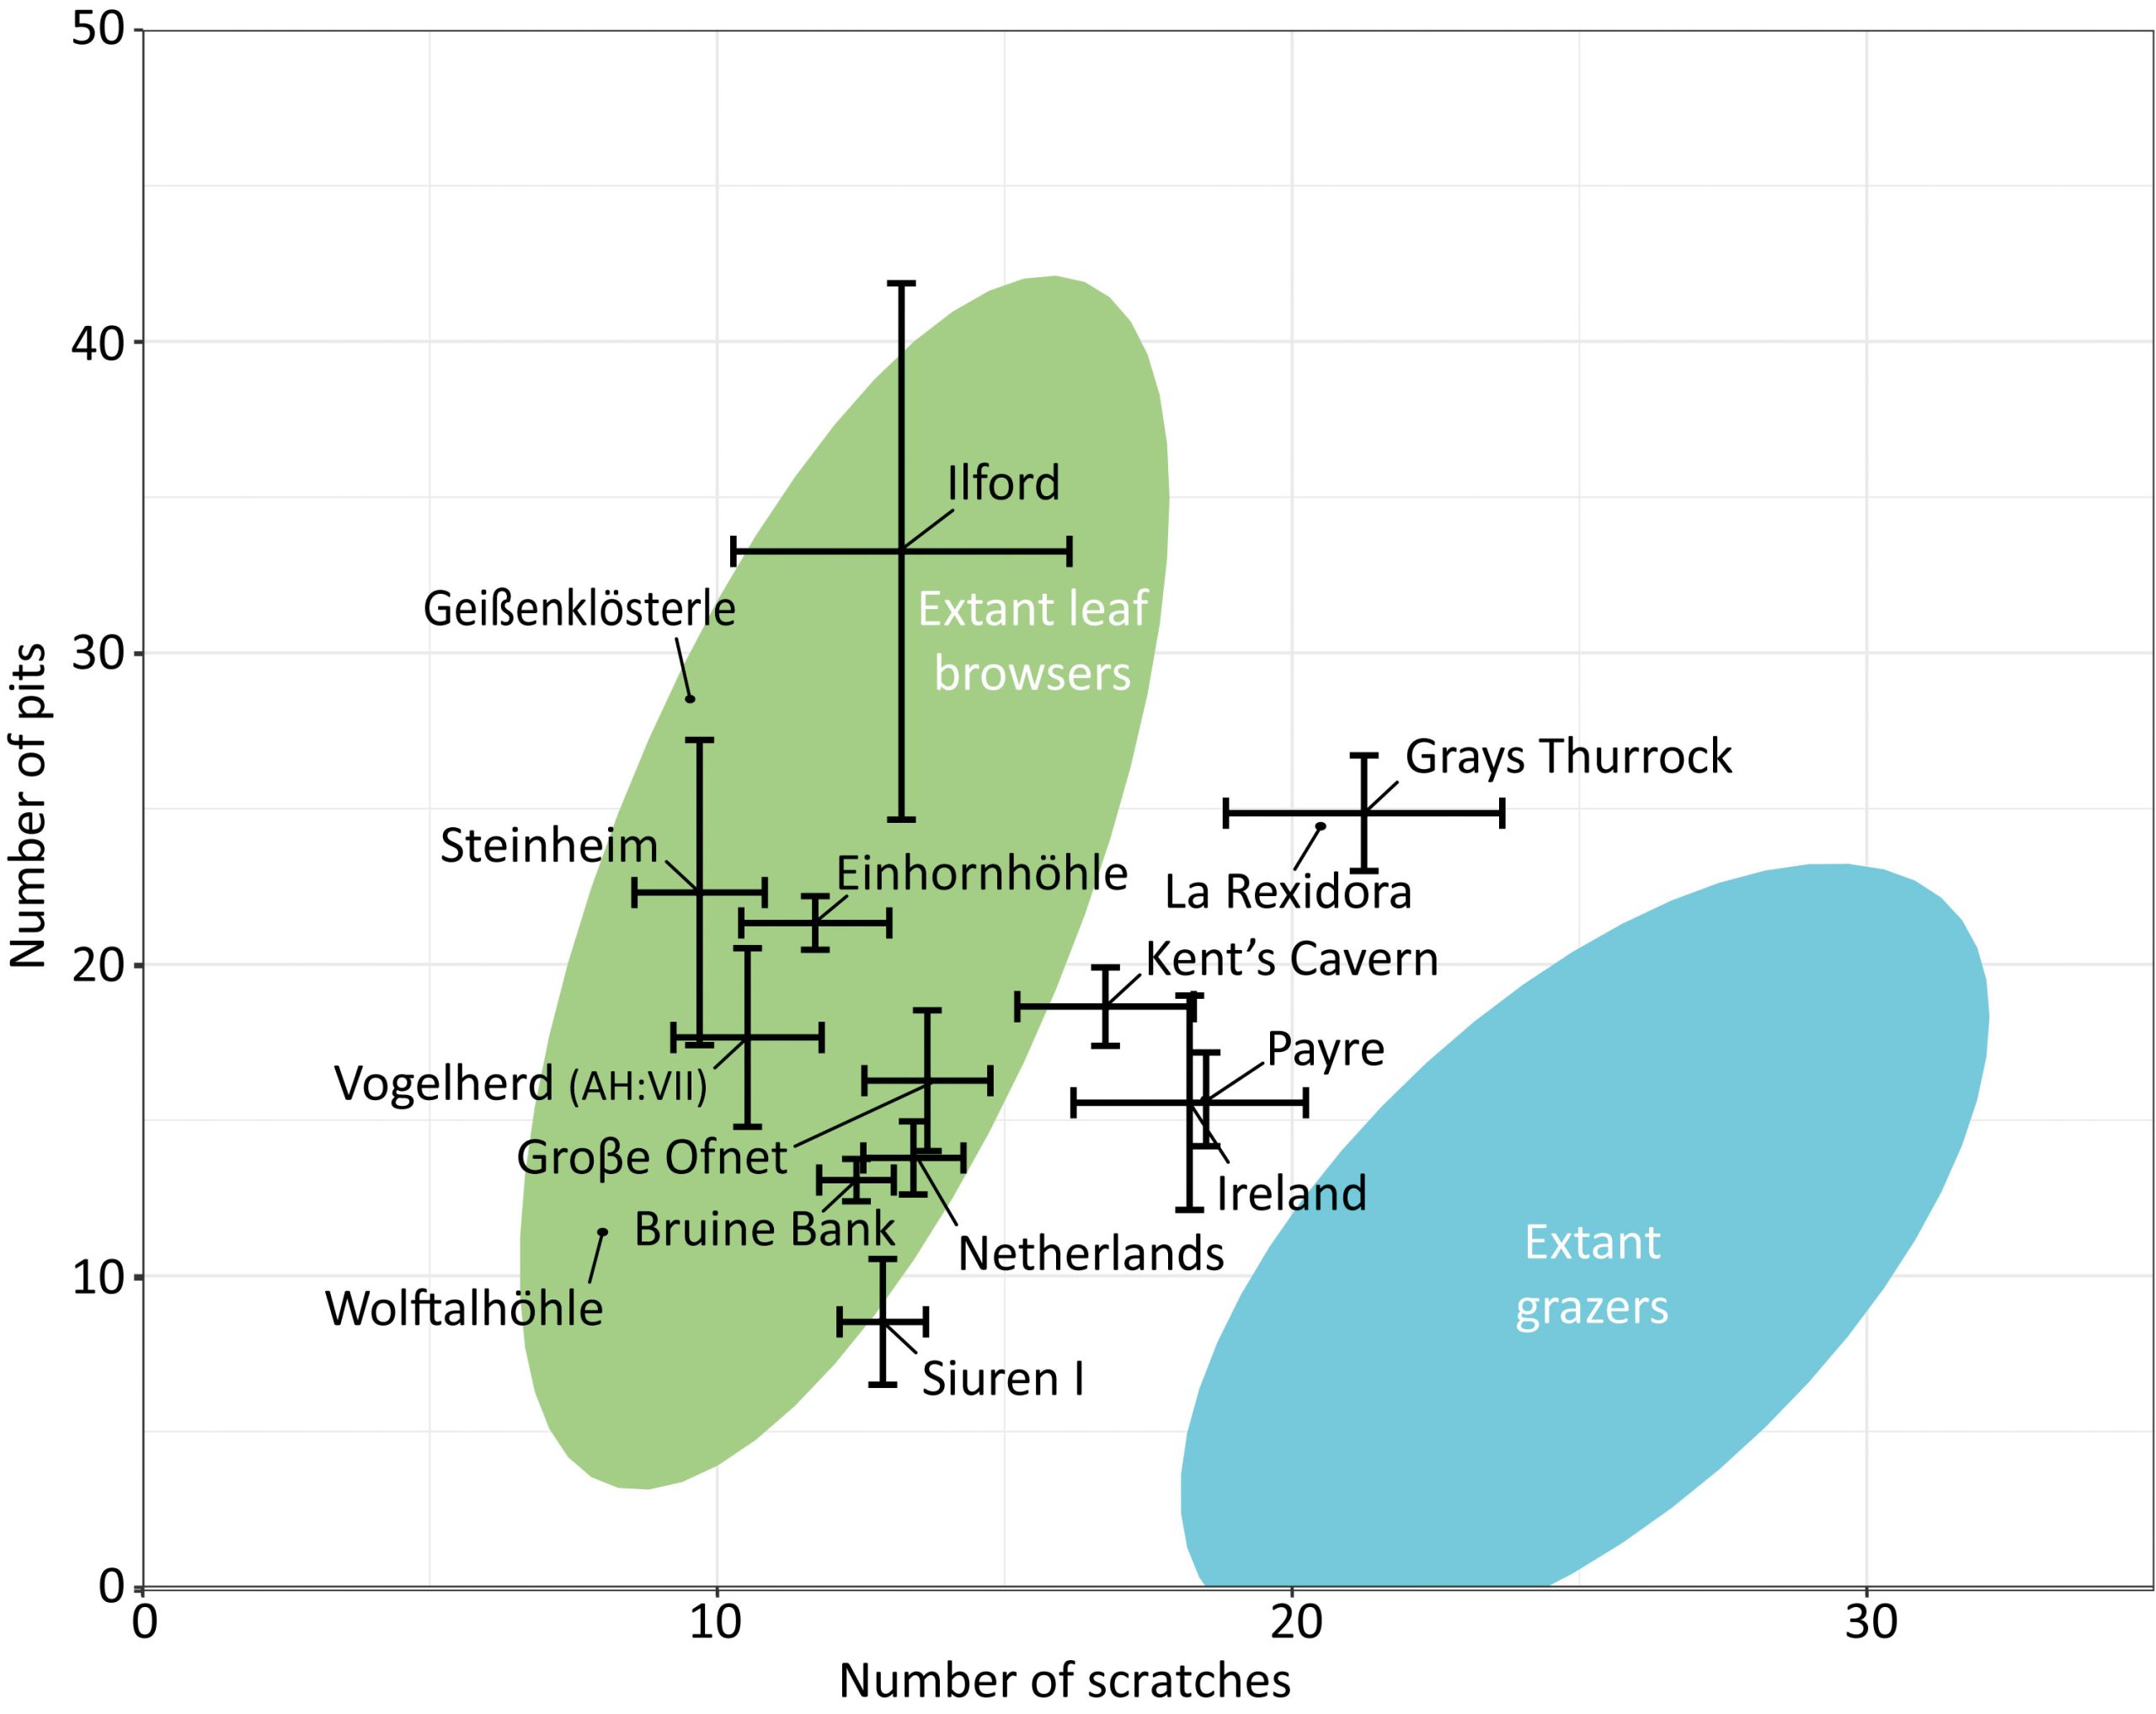 Bivariates Diagramm der Anzahl von Gruben und Kratzern für die Riesenhirschpopulationen